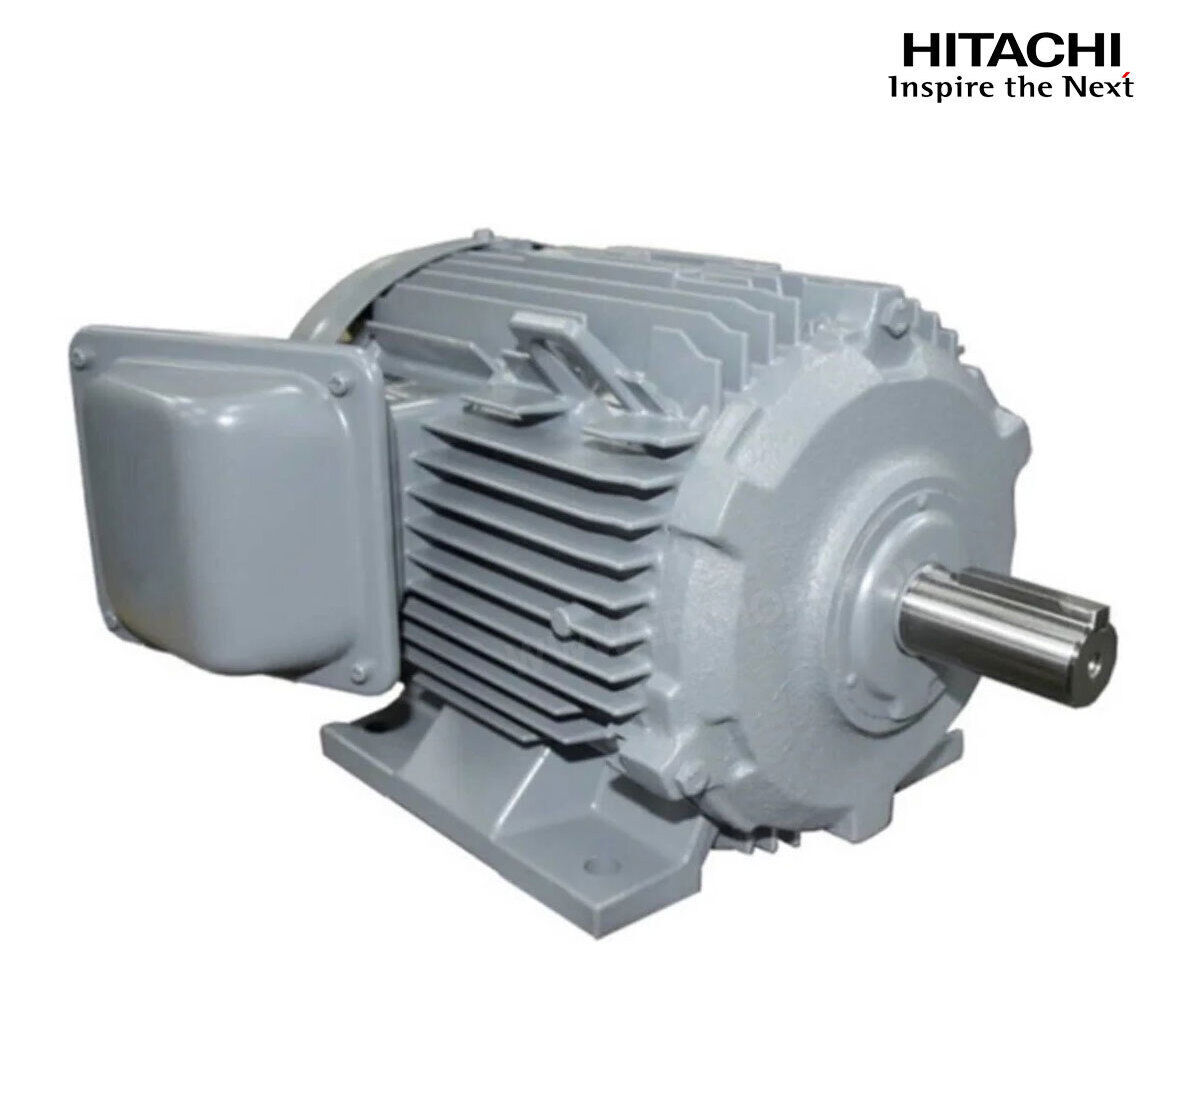 มอเตอร์ฮิตาชิของแท้ 100% HITACHI รุ่น TFO-KK กำลัง 10 แรงม้า (7.5 KW.) กำลังไฟฟ้าที่ใช้ 380V ความเร็วรอบตัวเปล่า 1450 RPM แกนเพลามอเตอร์ 38 MM.รับประกัน 3 ปี มีของพร้อมจัดส่งทุกวัน